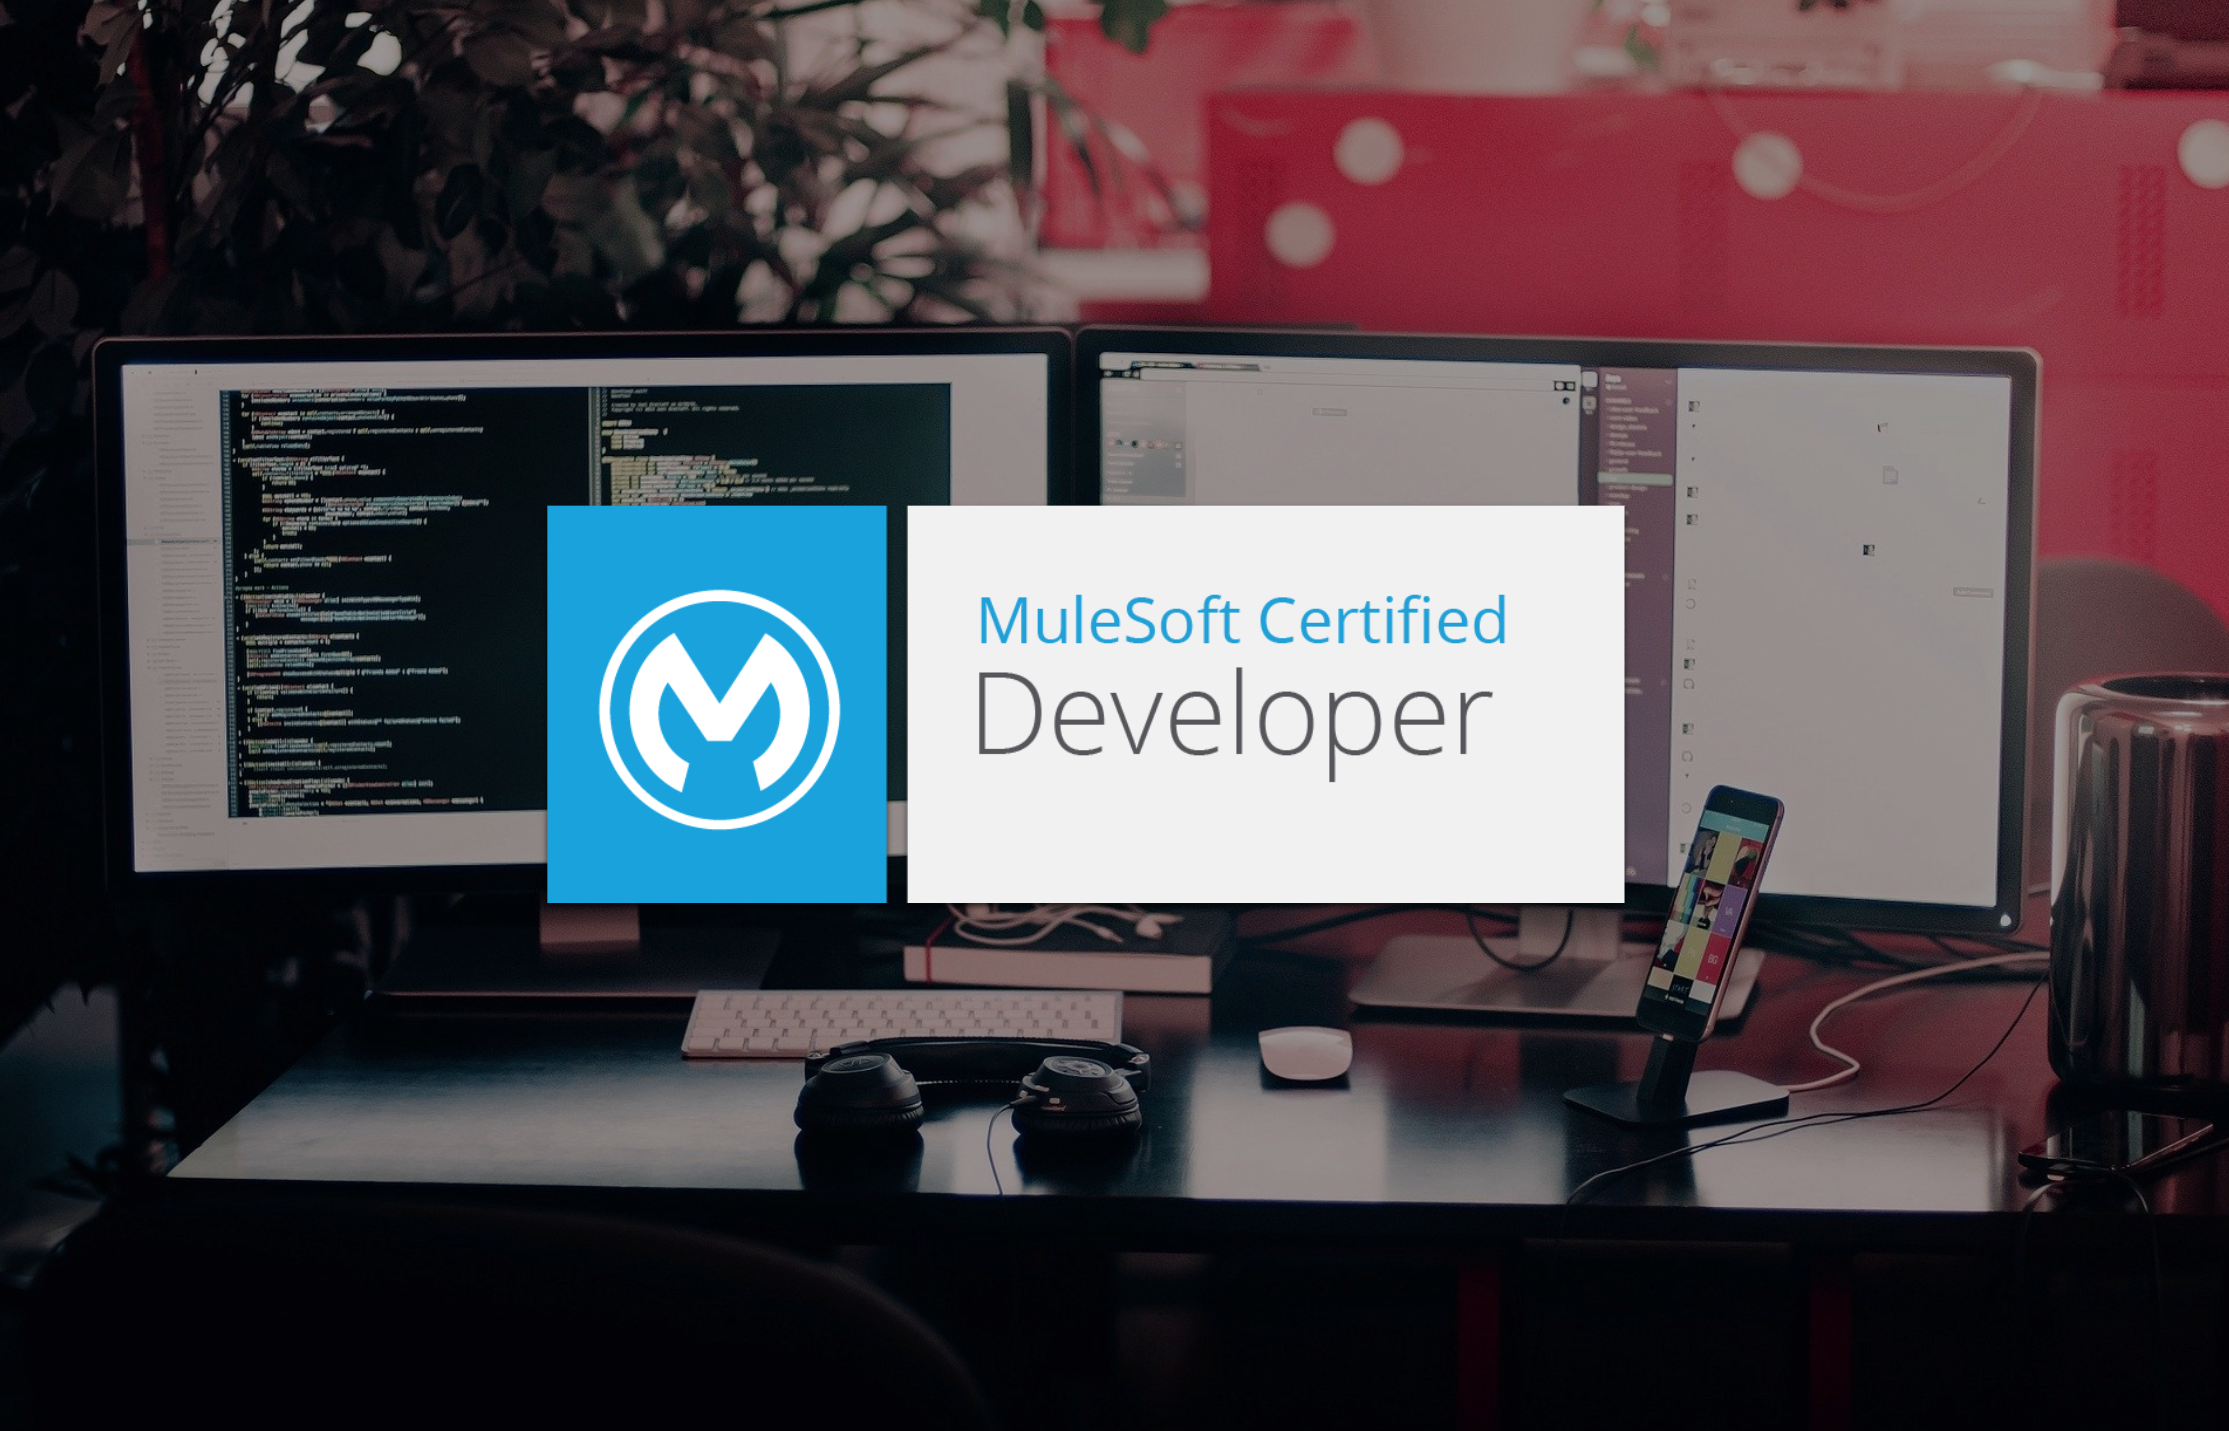 MuleSoft Certified Developer